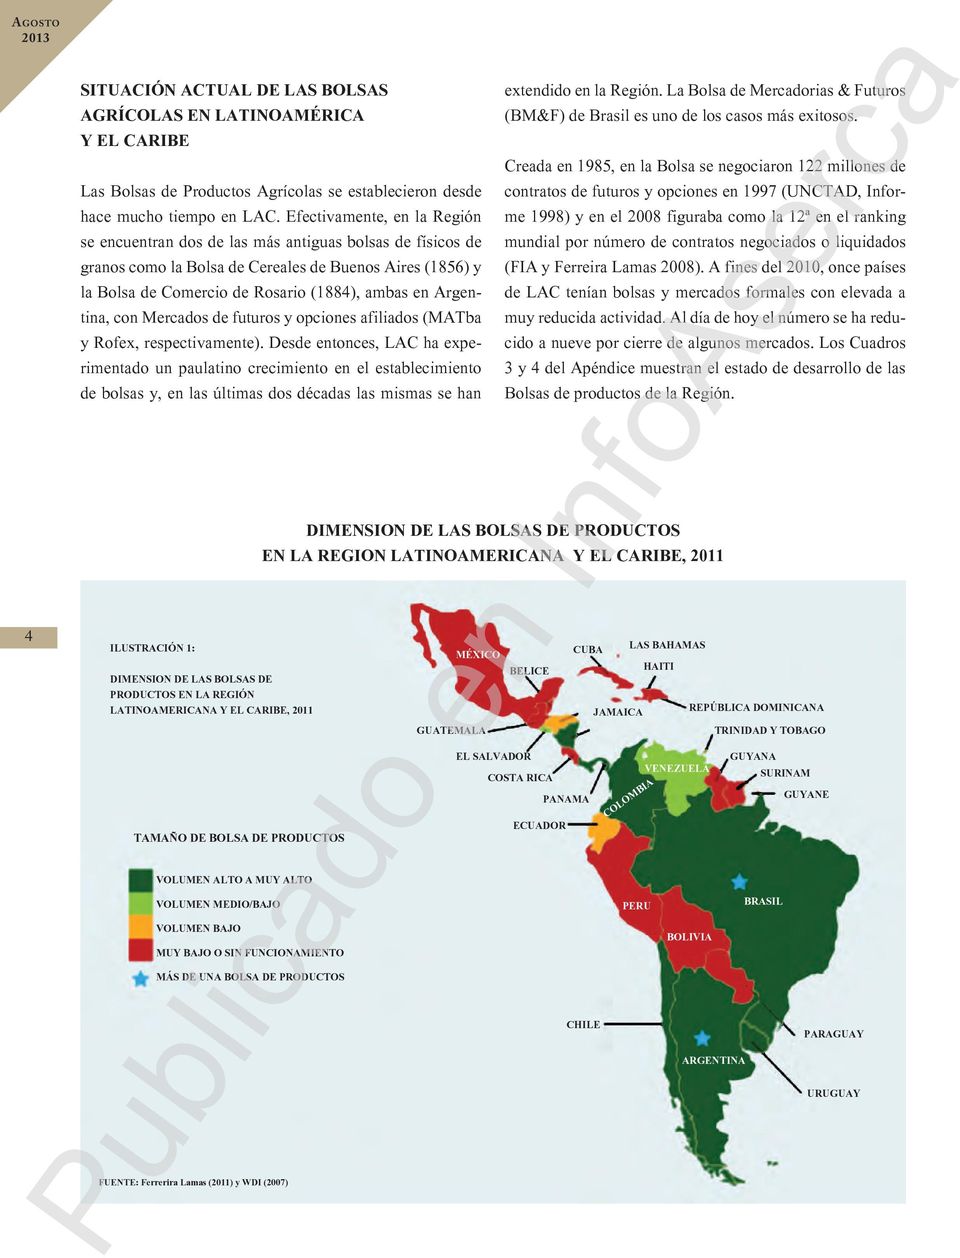 Argentina, con Mercados de futuros y opciones afiliados (MATba y Rofex, respectivamente).